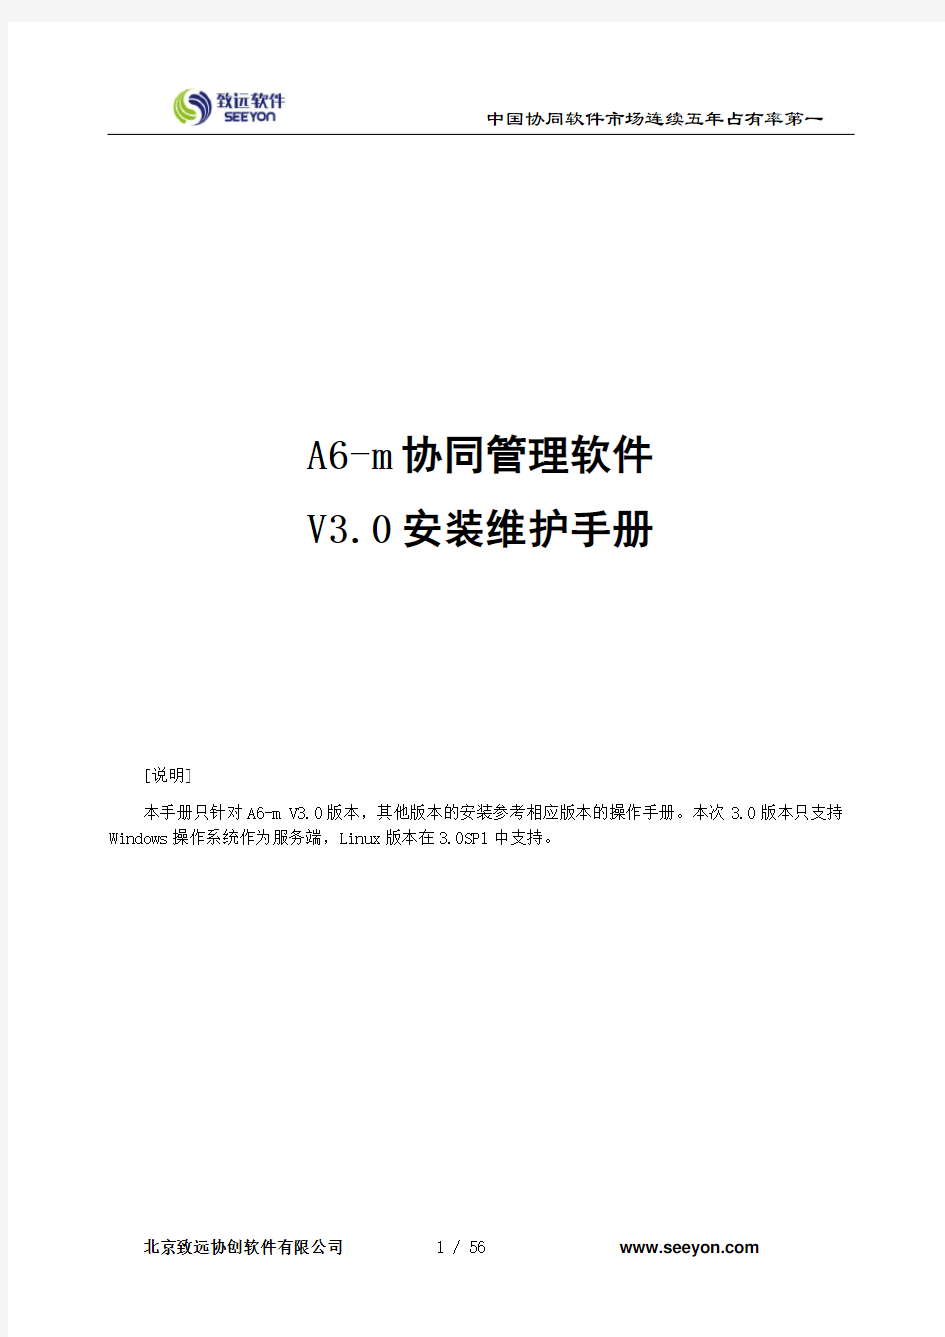 A6-m V3.0安装维护手册